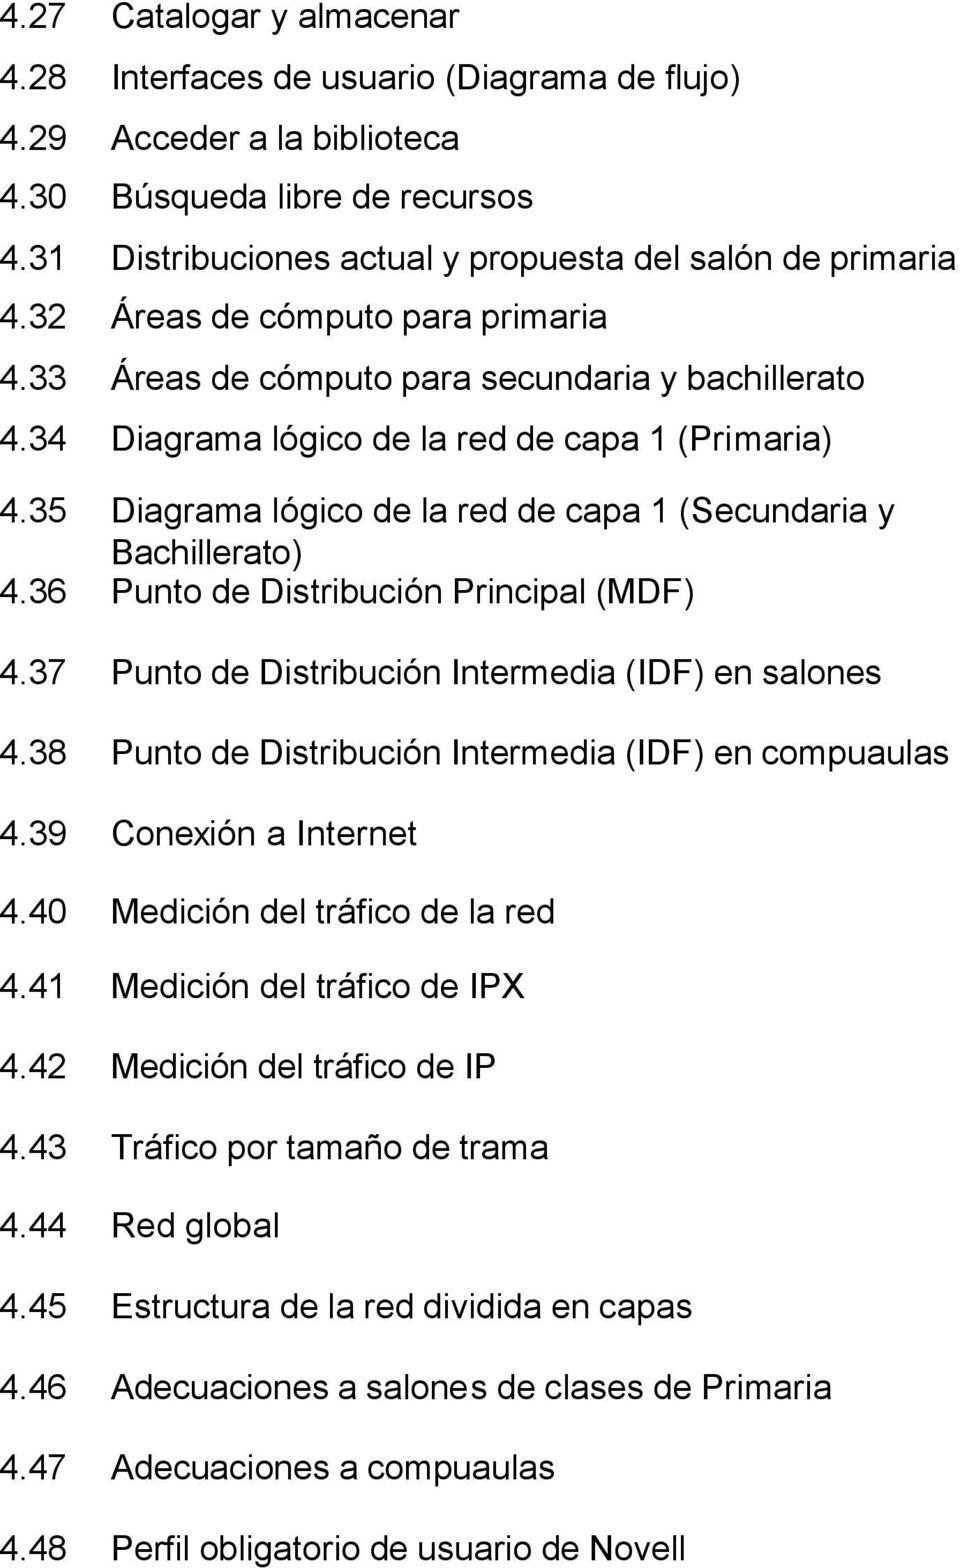 35 Diagrama lógico de la red de capa 1 (Secundaria y Bachillerato) 4.36 Punto de Distribución Principal (MDF) 4.37 Punto de Distribución Intermedia (IDF) en salones 4.